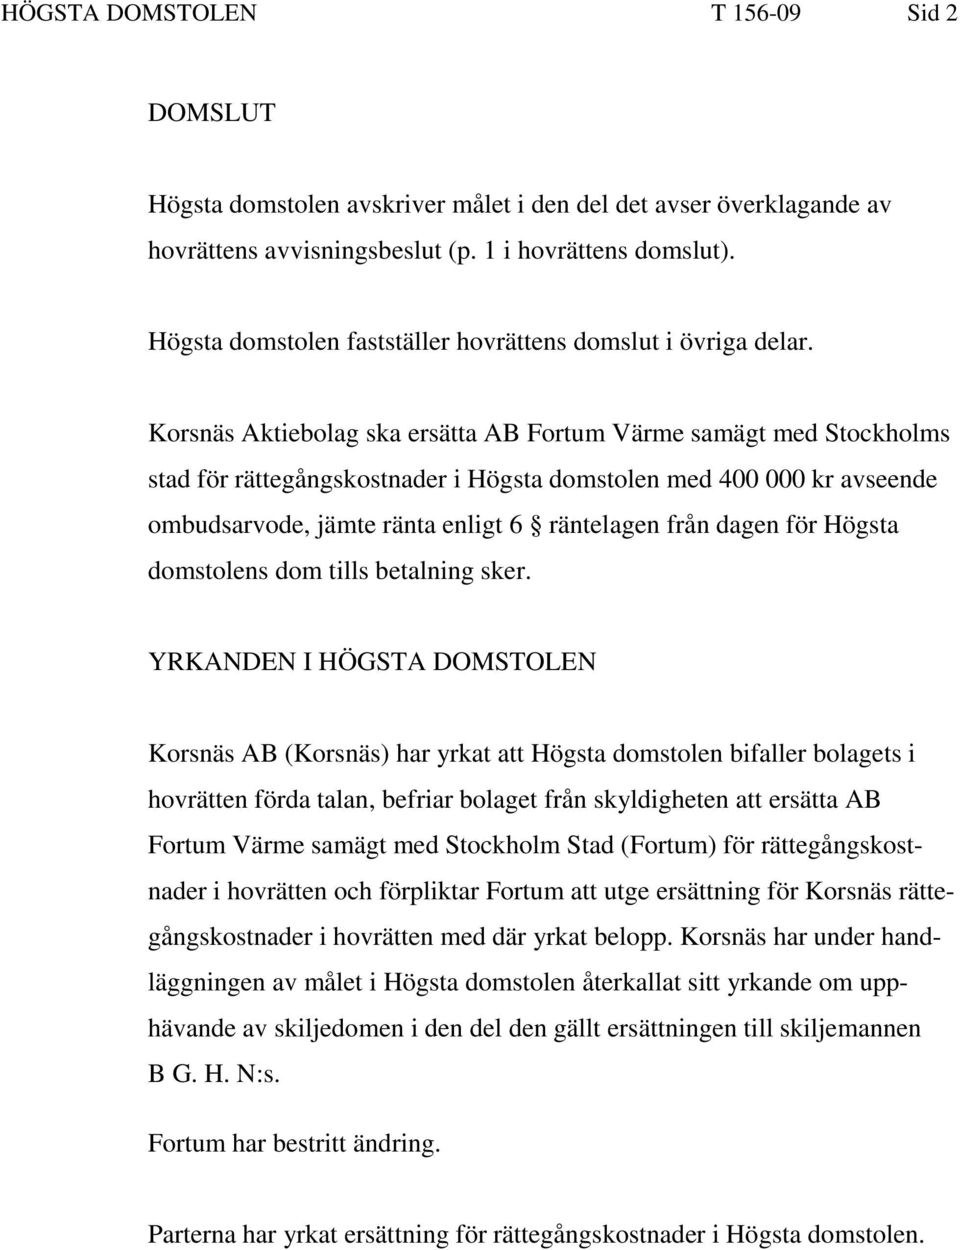 Korsnäs Aktiebolag ska ersätta AB Fortum Värme samägt med Stockholms stad för rättegångskostnader i Högsta domstolen med 400 000 kr avseende ombudsarvode, jämte ränta enligt 6 räntelagen från dagen